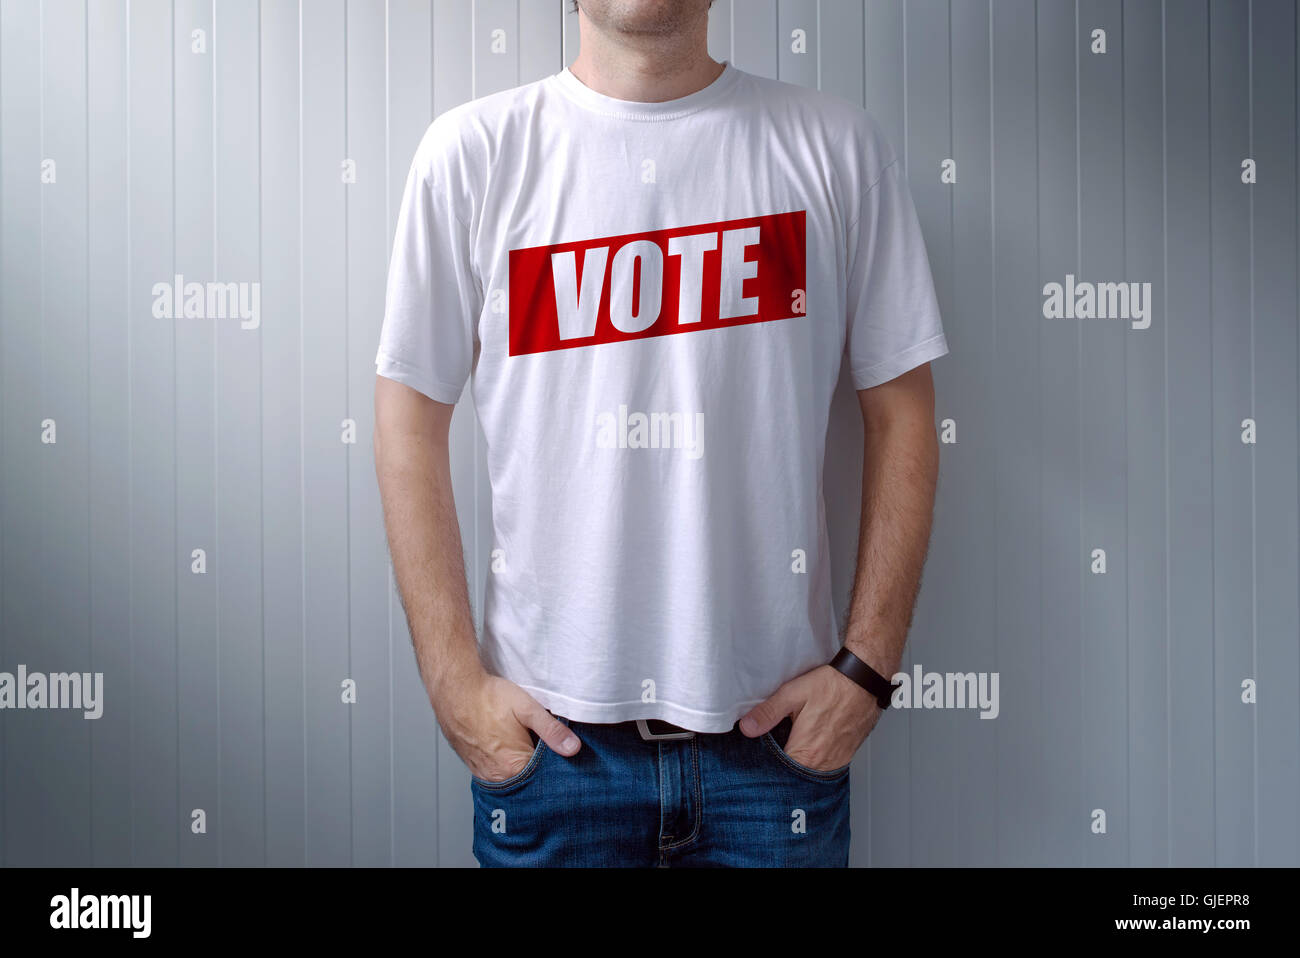 Mann trägt T-shirt mit Abstimmung-Label gedruckt auf Brust, ausdrückliche Einstellung und Meinung zu politischen Wahlen Stockfoto